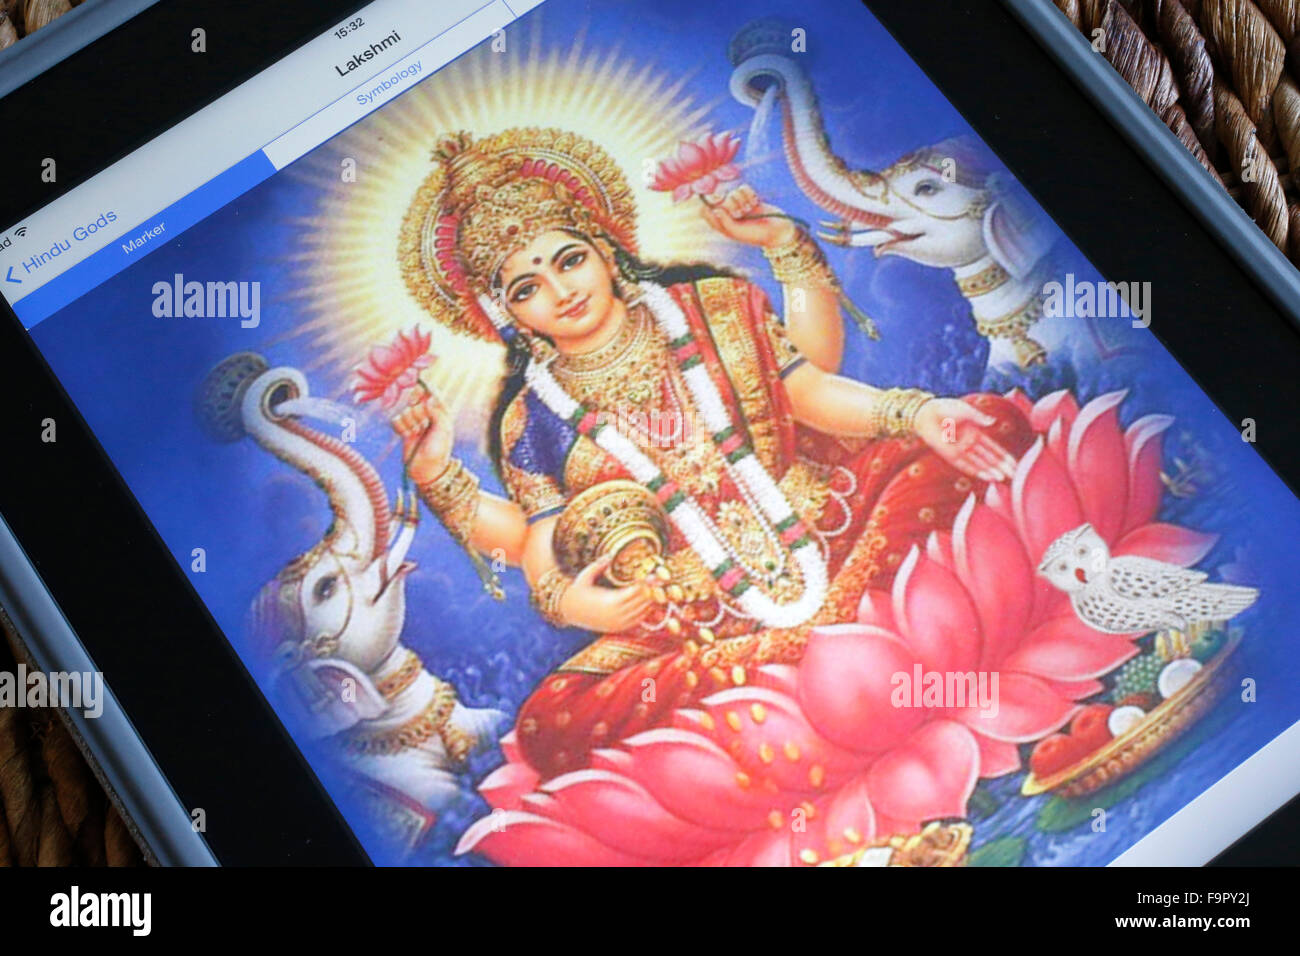 Hindu deity on an Ipad. Lakshmi. Stock Photo